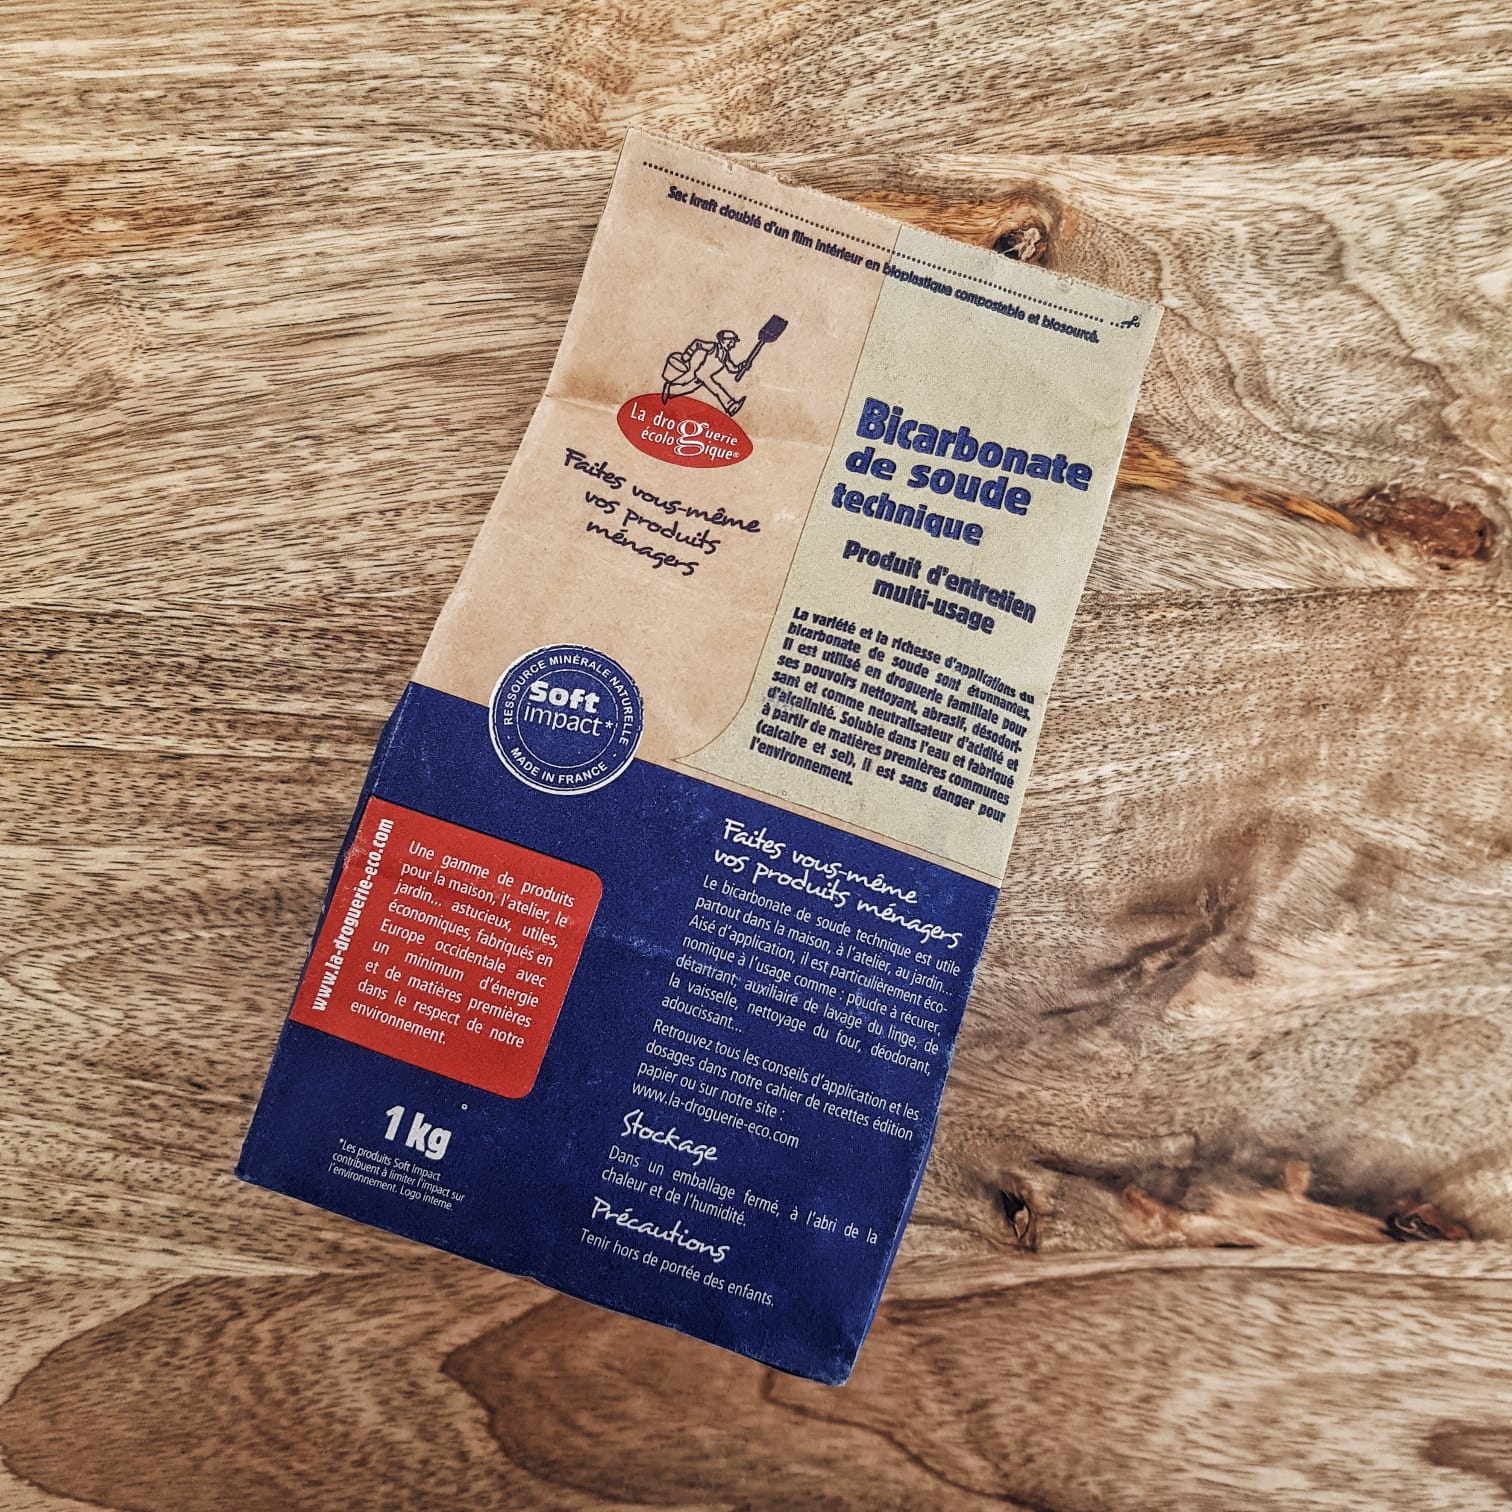 Bicarbonate de soude en sac de 1kg – Acheter 1 kg de bicarbonate alimentaire